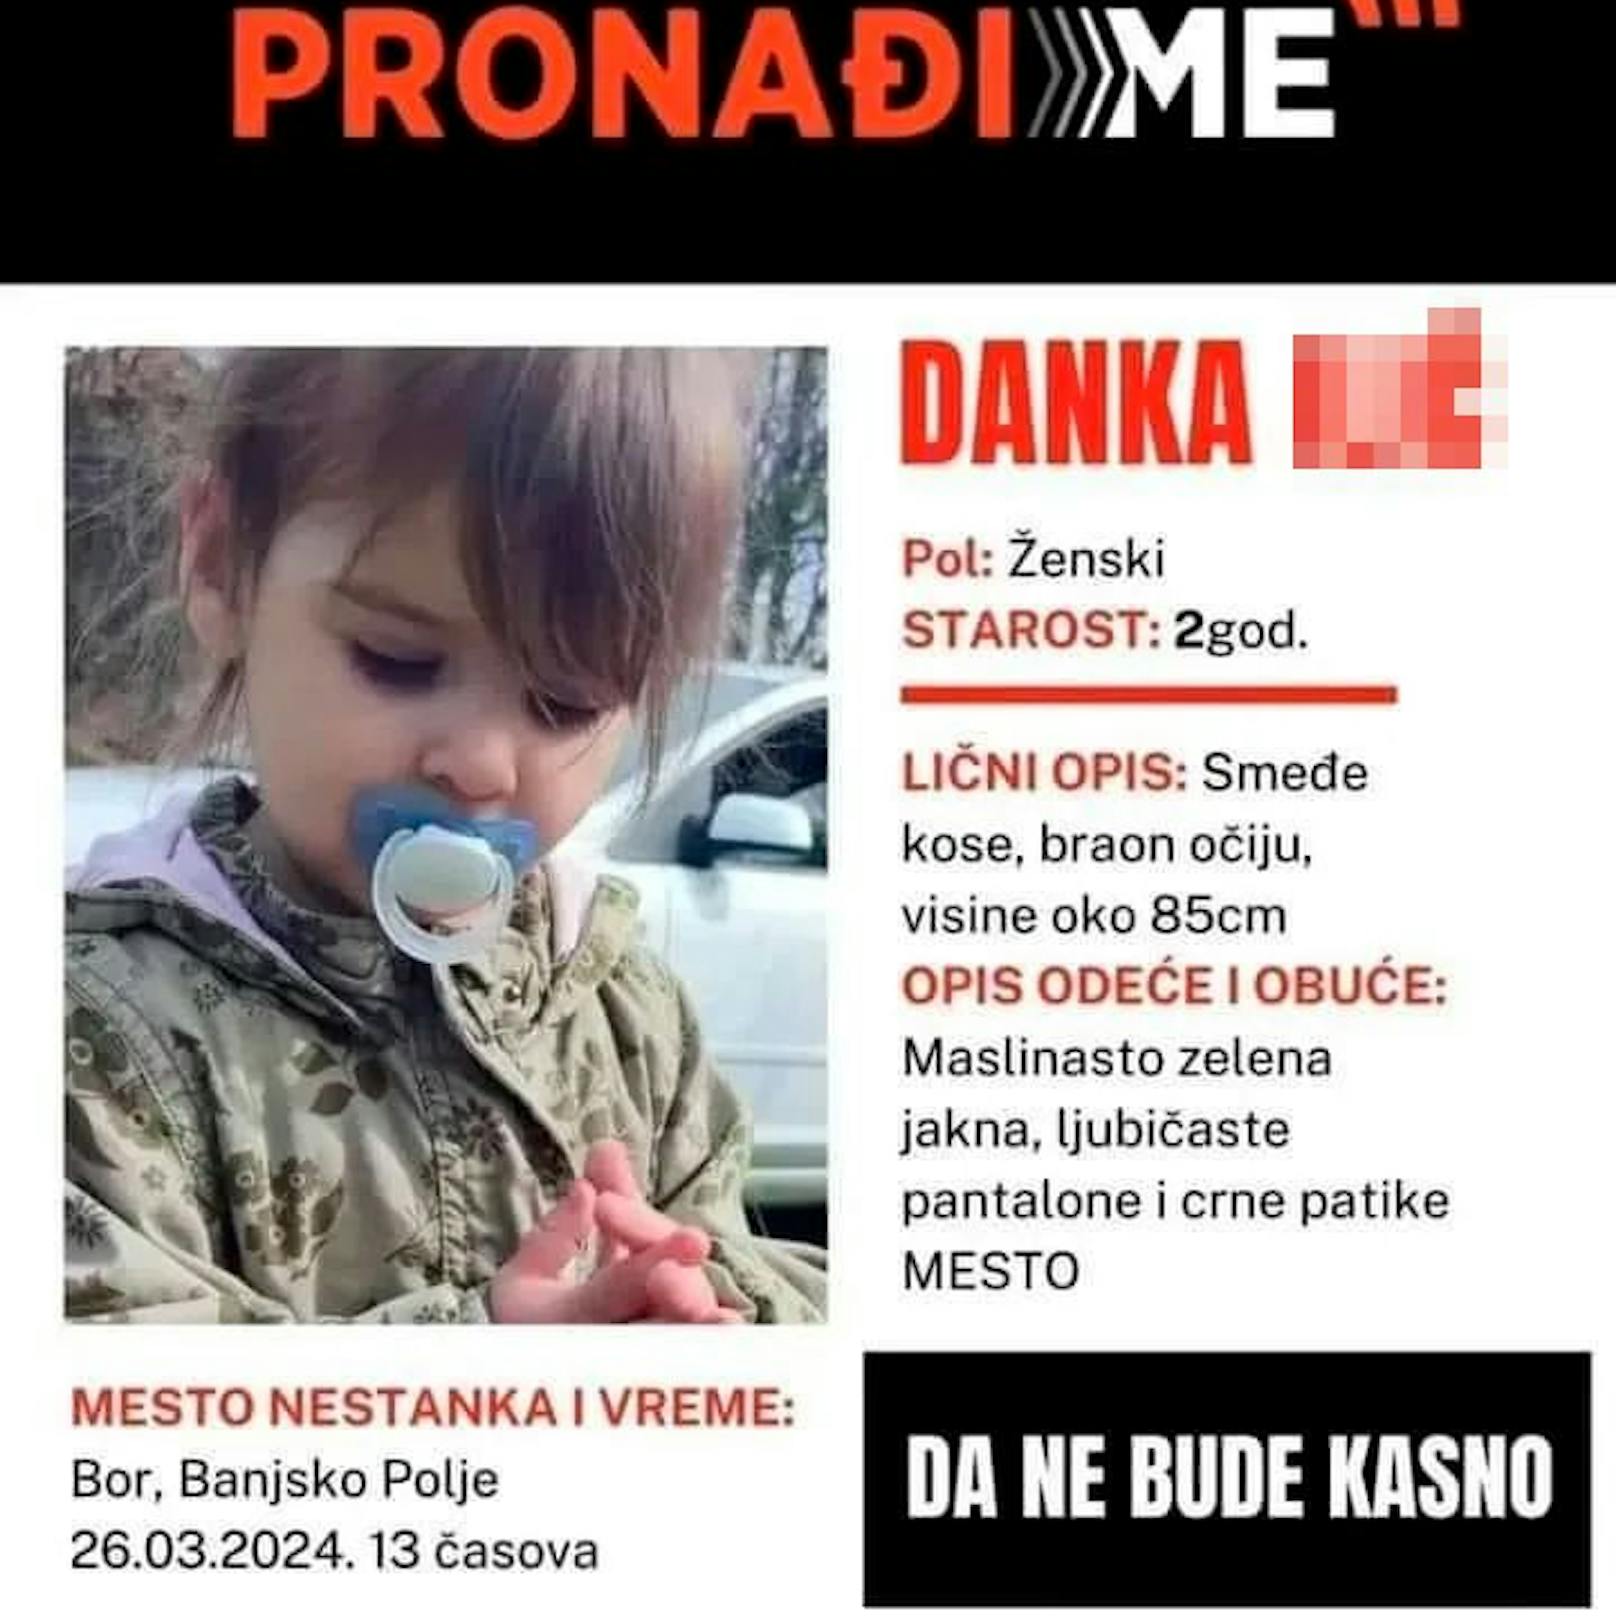 Die kleine Danka wird seit Tagen in Serbien vermisst.